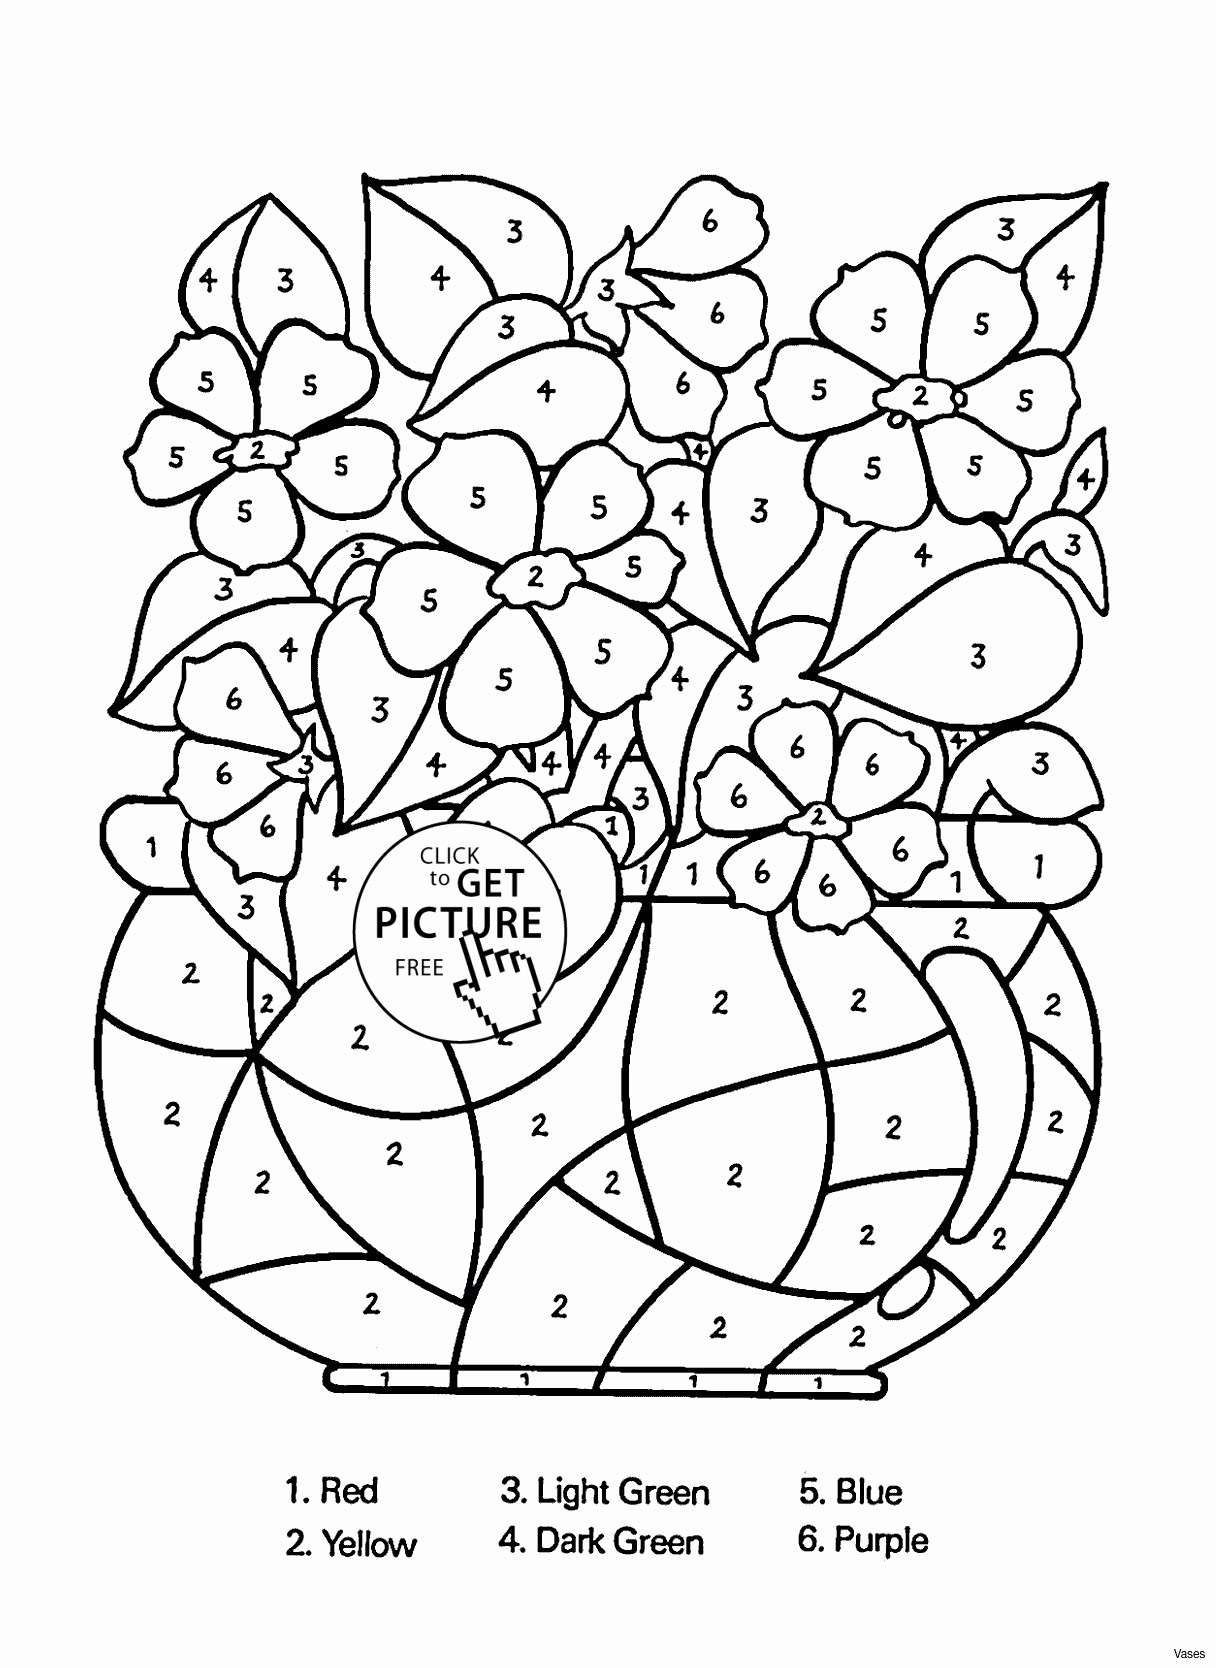 decorative flower vase online of white glass vase elegant vases flower vase coloring page pages with regard to white glass vase elegant vases flower vase coloring page pages flowers in a top i 0d